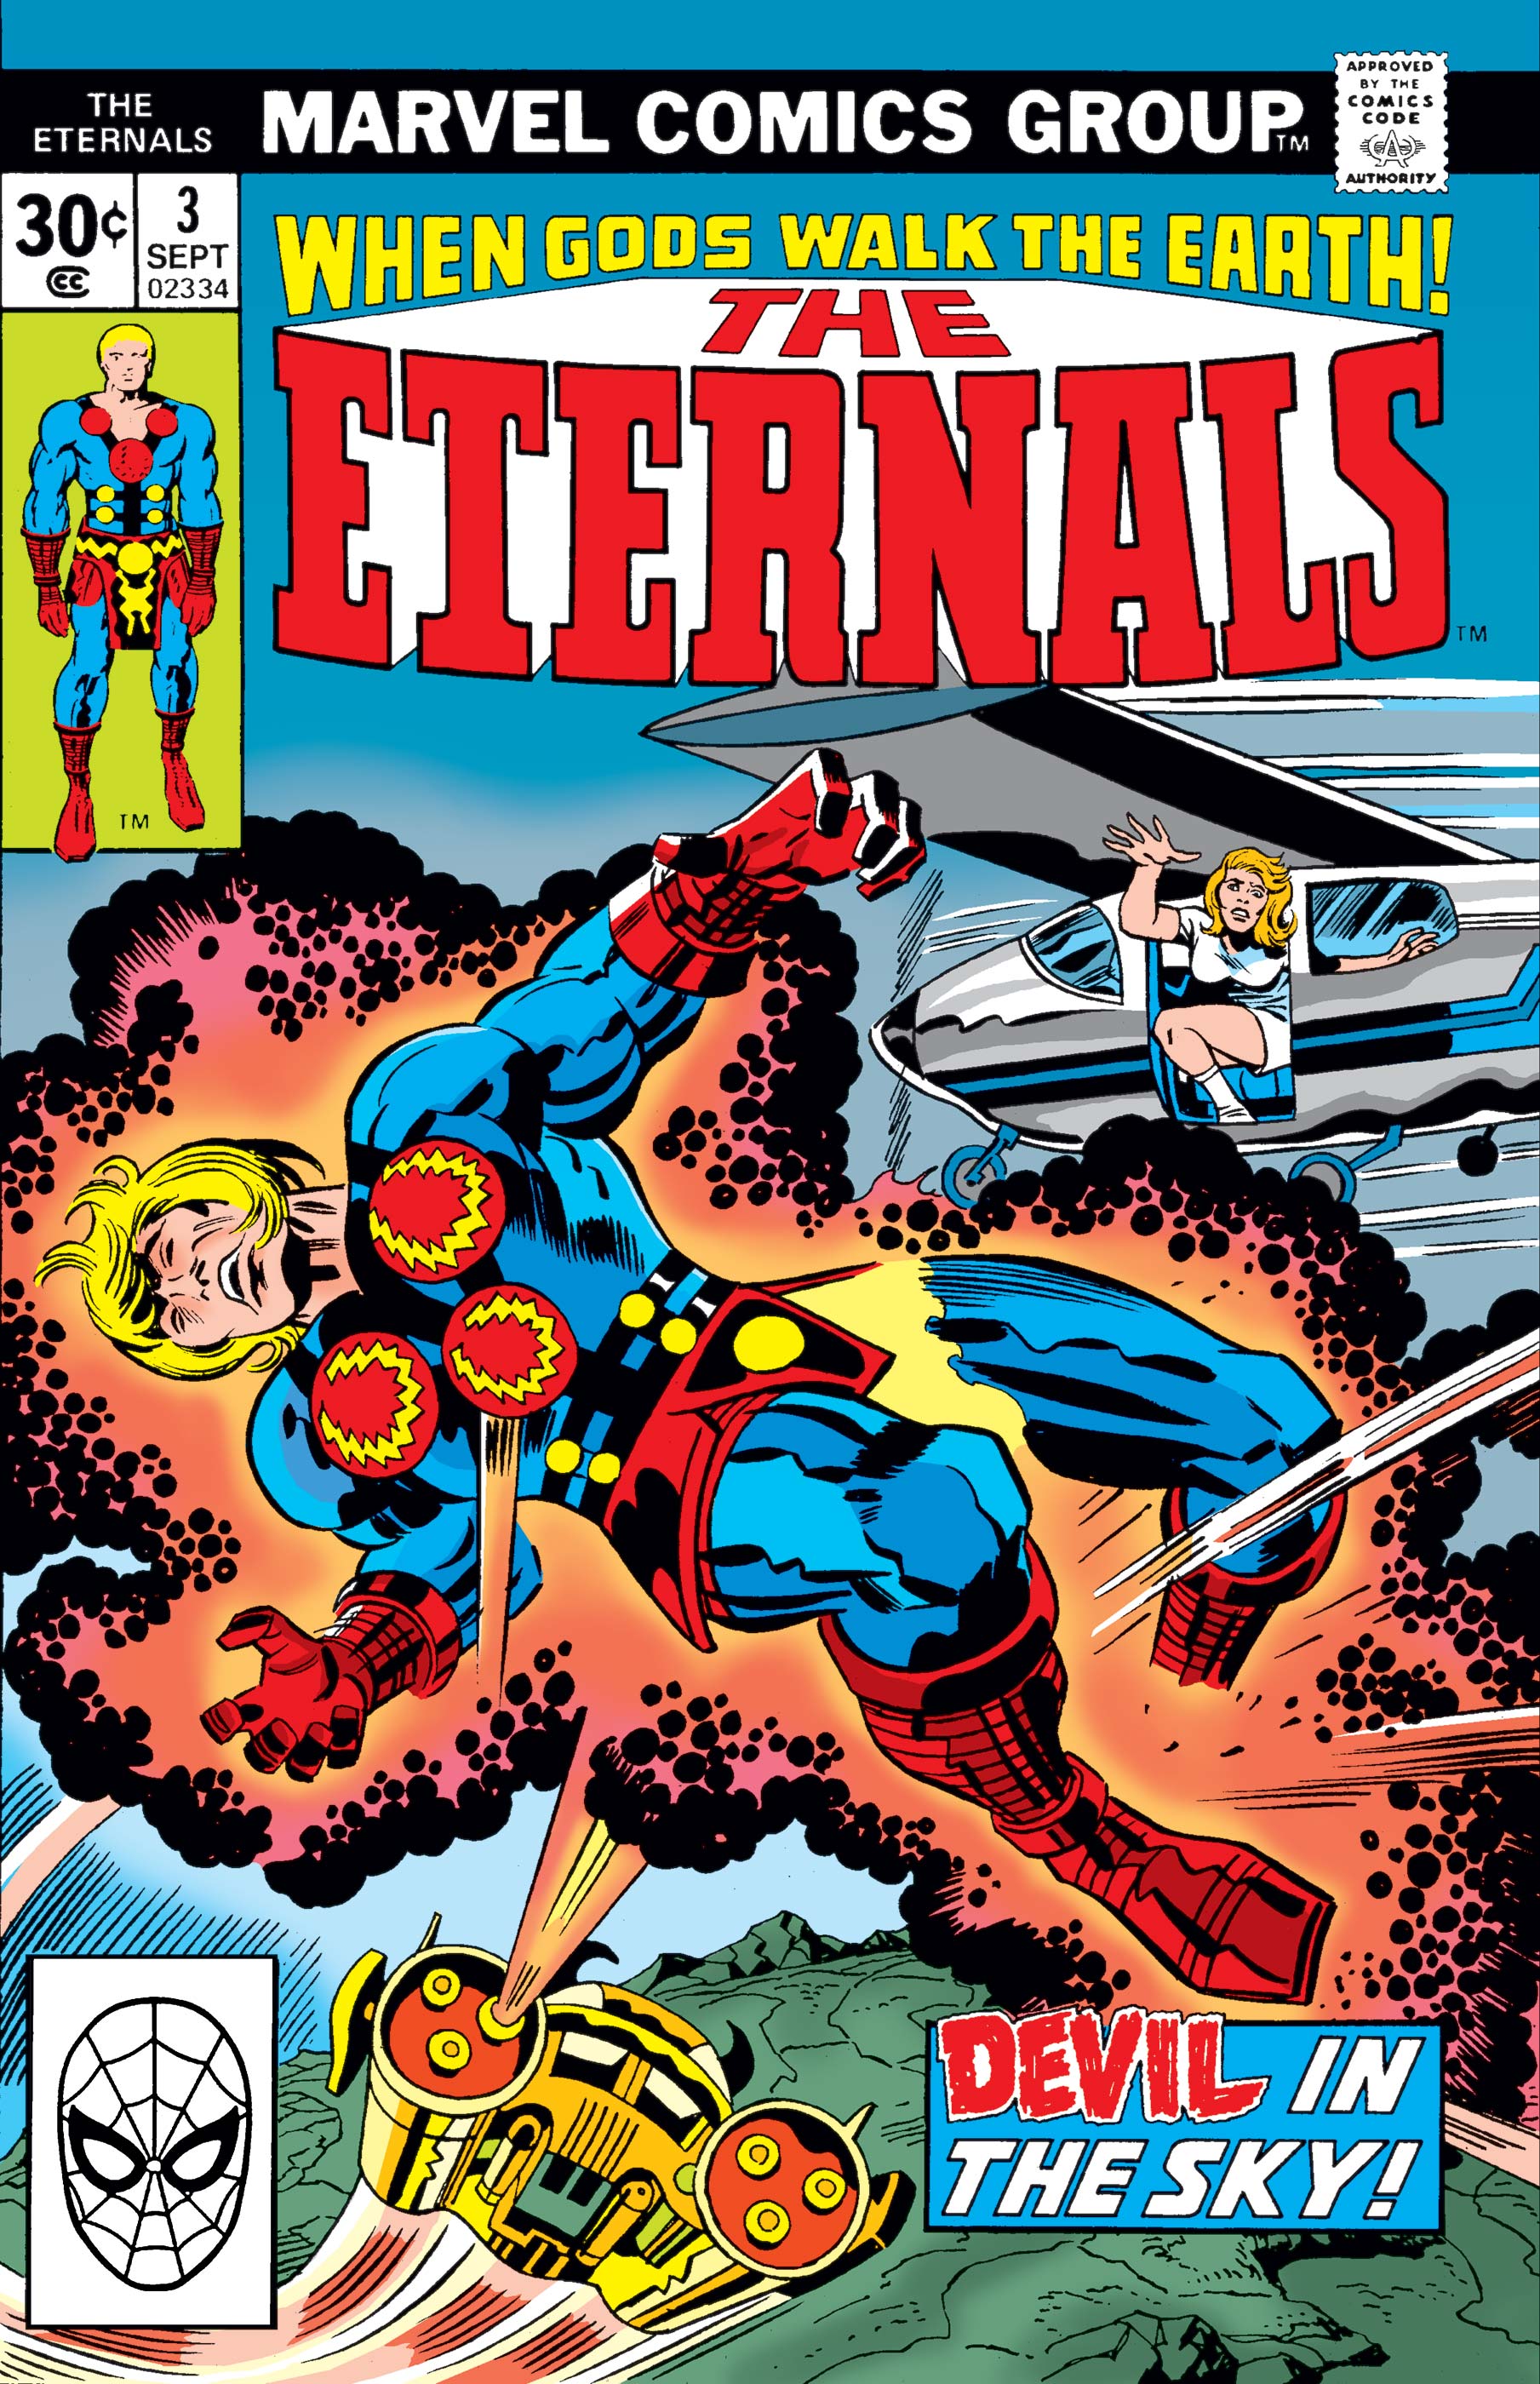 Eternals (1976) #3